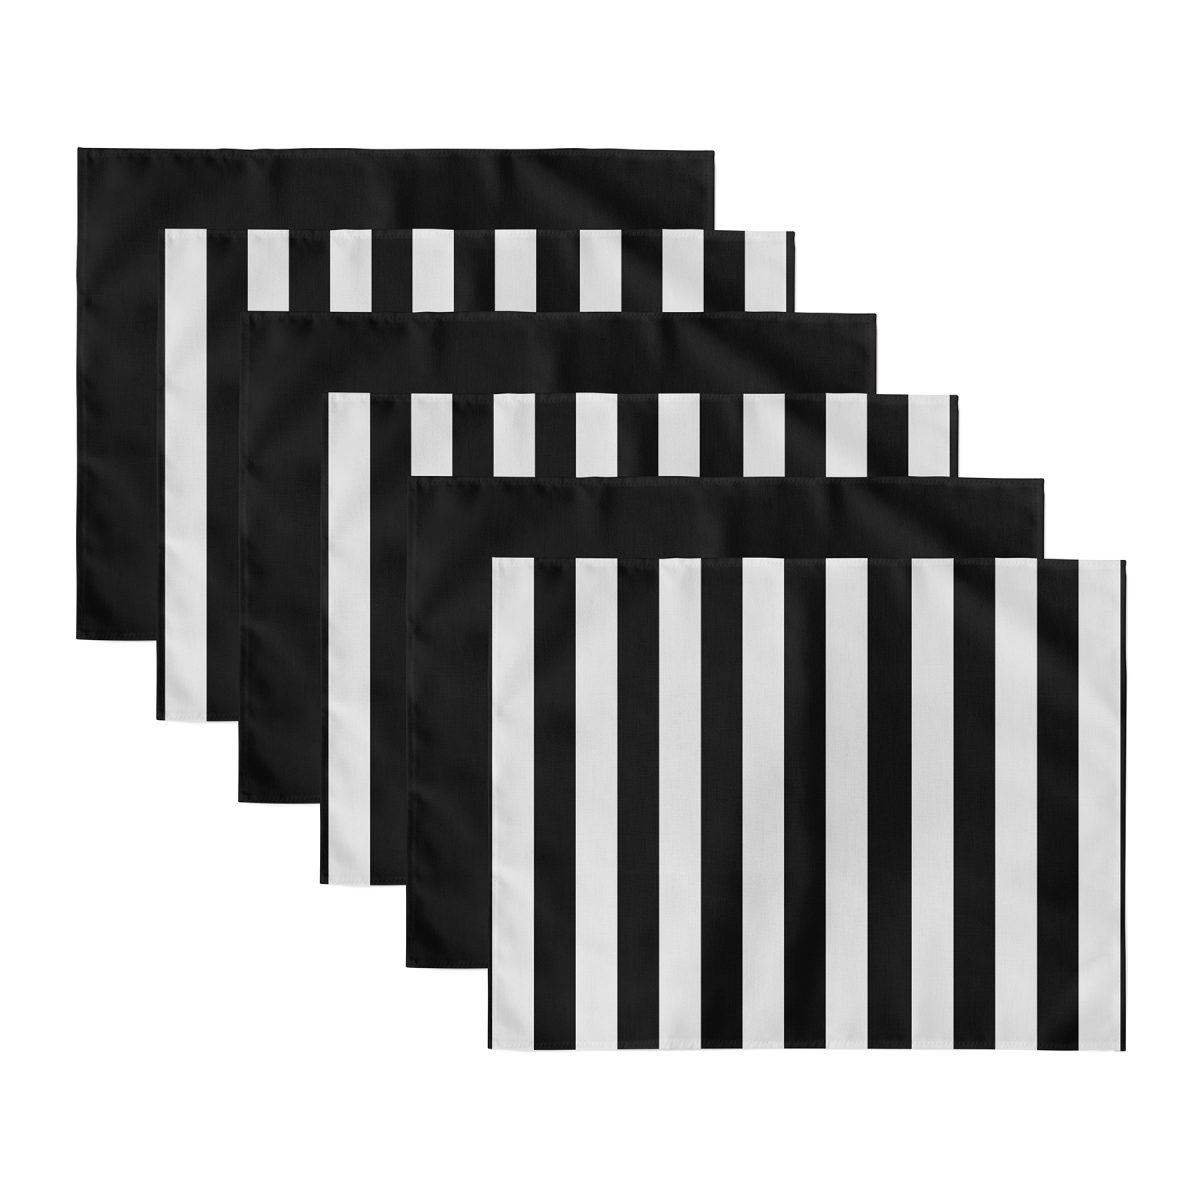 6'lı Siyah Beyaz Çizgili Düz Siyah Özel Tasarımlı Modern Sunum Altlığı - Amerikan Servis Seti Realhomes